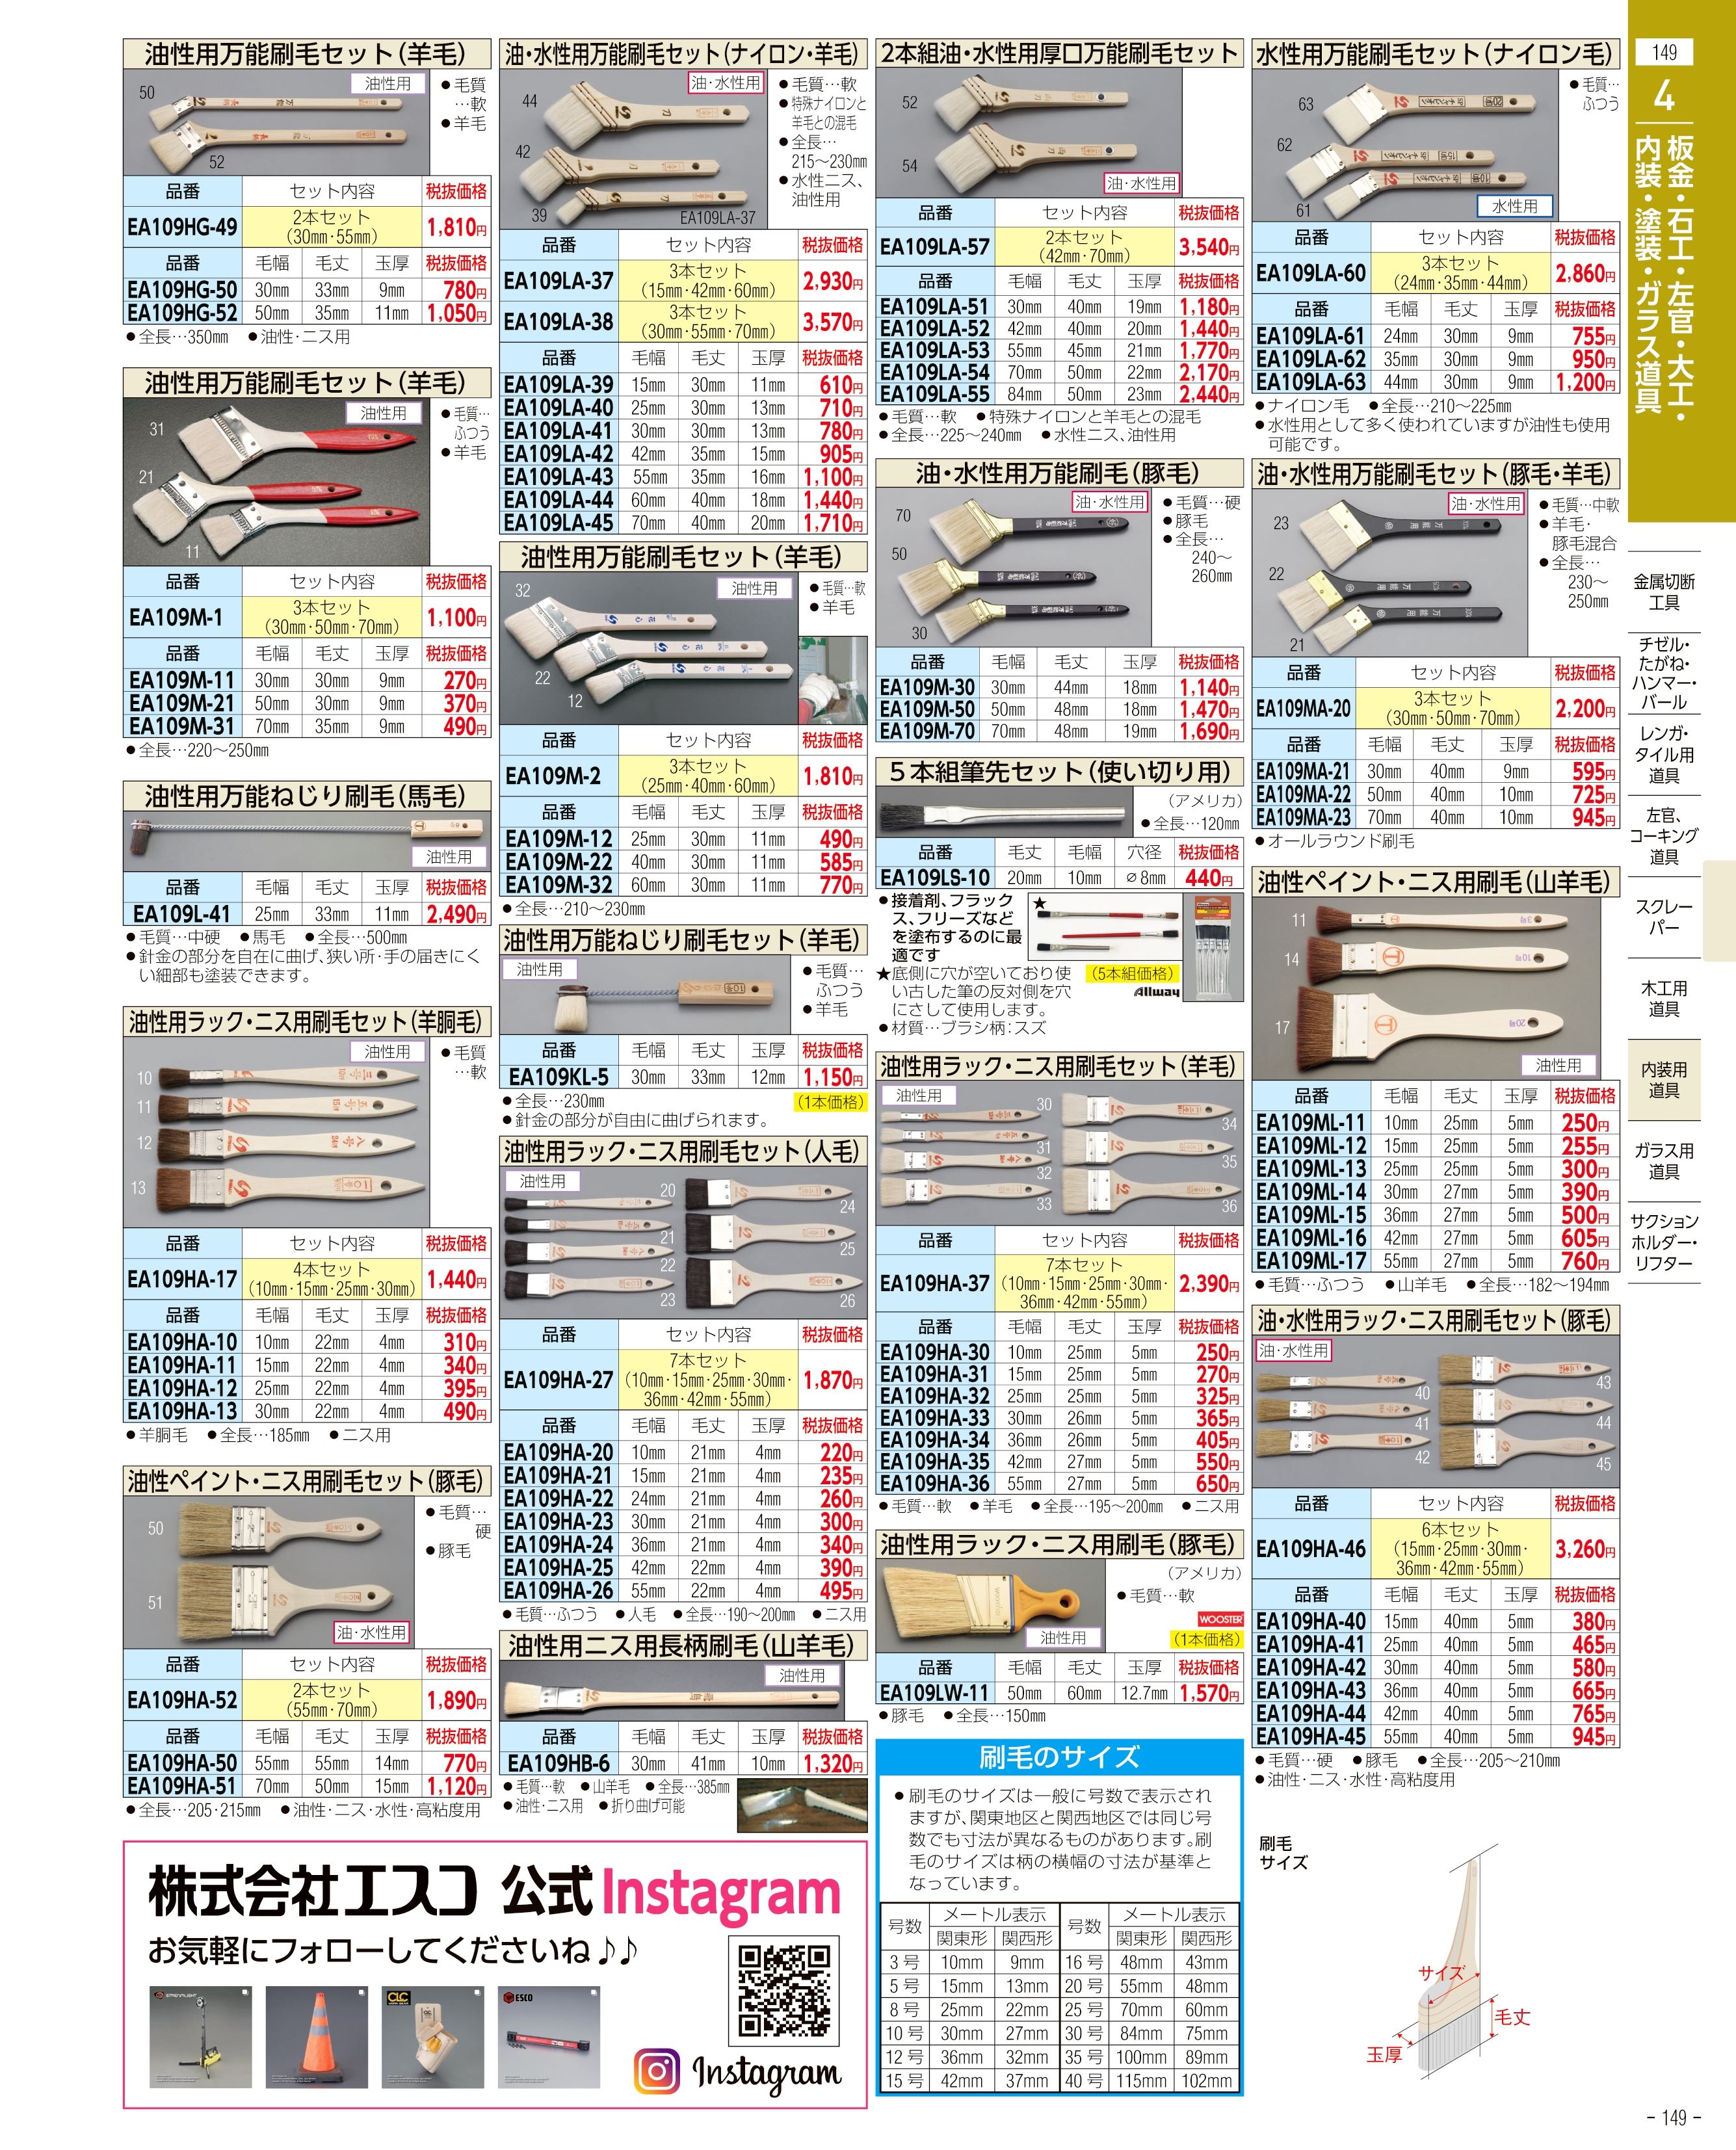 EA109NX-301｜710-1190mm/ 3段 伸縮ハンドル(ﾜﾝﾀｯﾁﾛｯｸ)｜株式会社エスコ